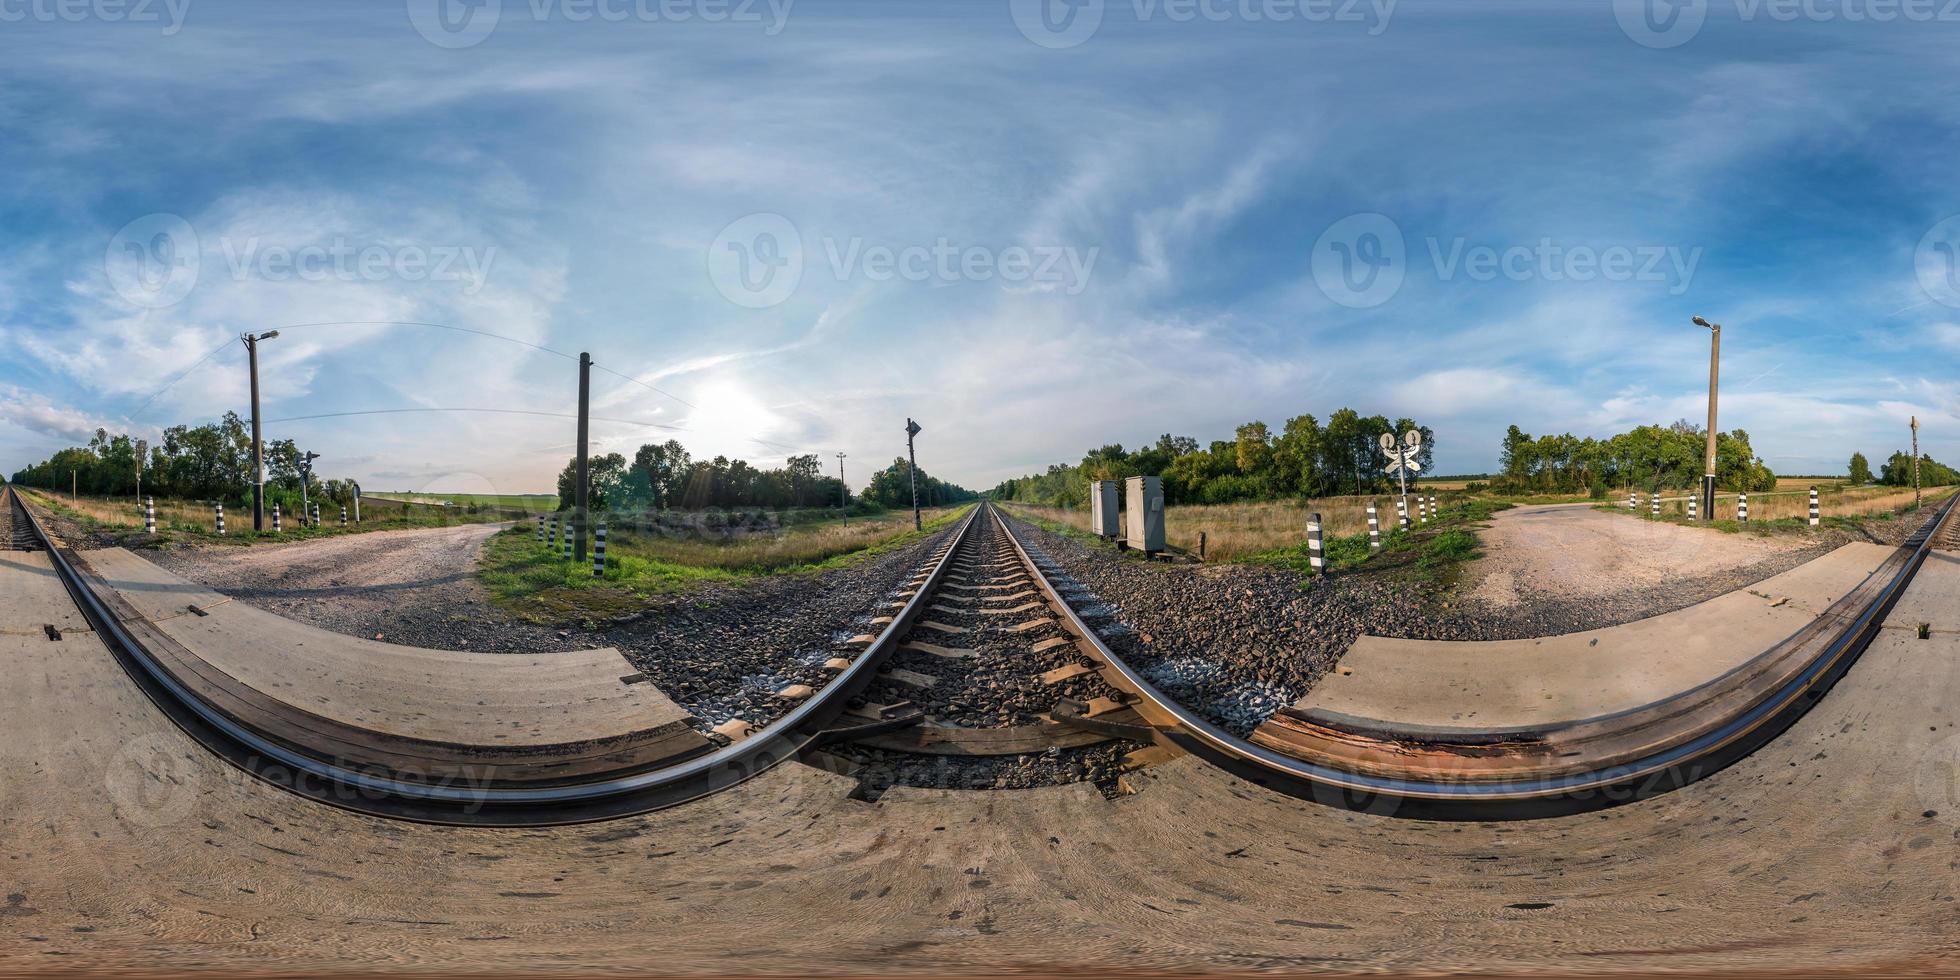 fullständigt sömlöst sfäriskt panorama 360 x 180 vinkelvy nära järnvägskorsning i ekvirektangulär projektion, redo för virtual reality-innehåll foto